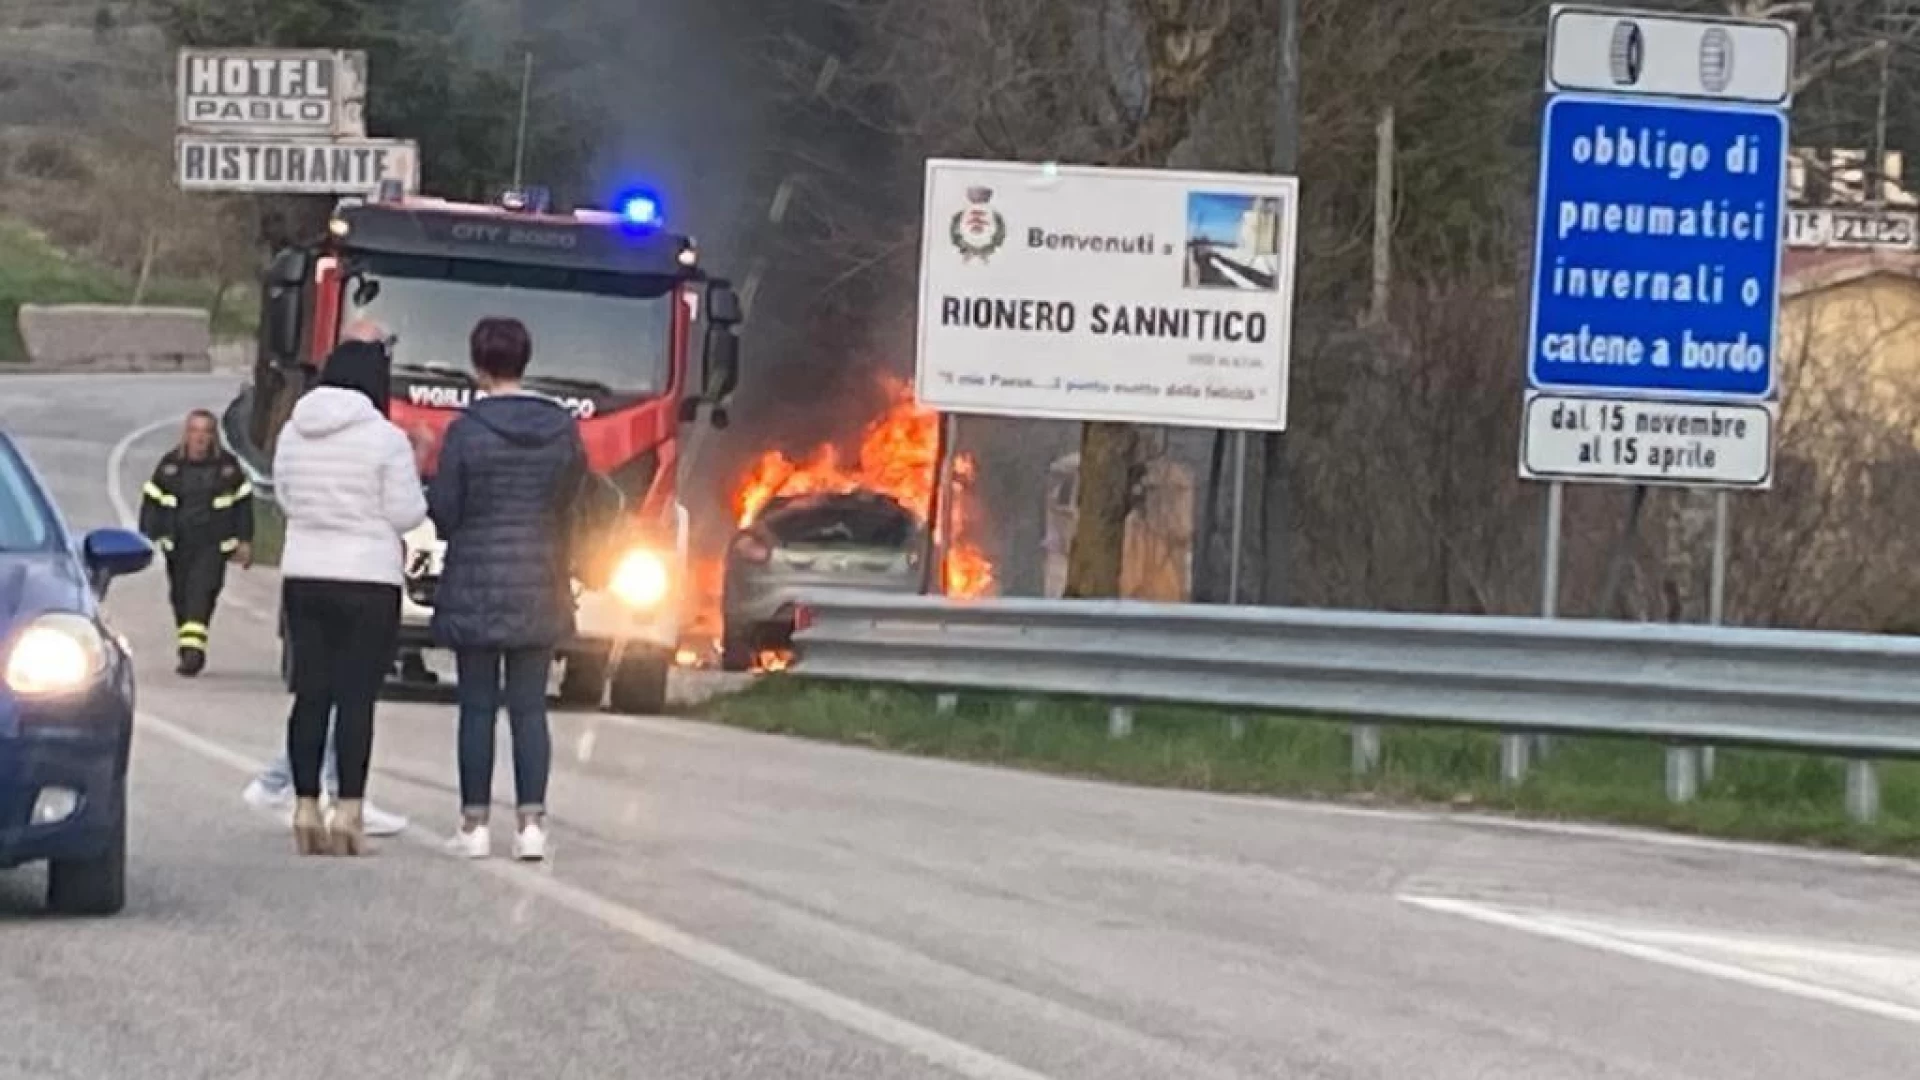 Rionero Sannitico: Auto in fiamme, intervengono i vigili del fuoco